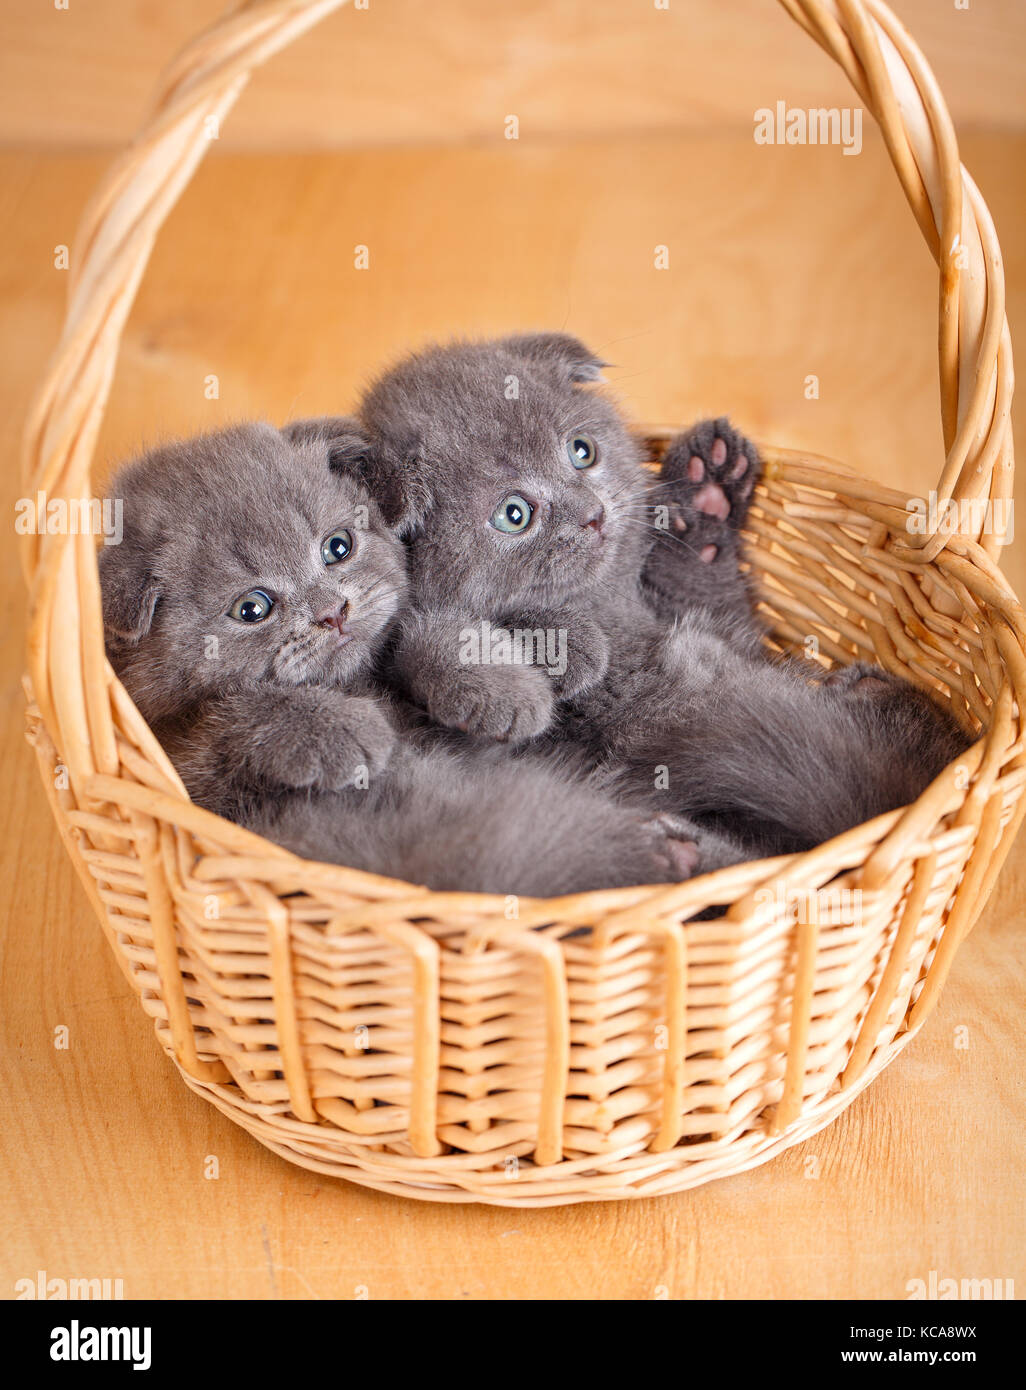 Small kittens in wicker basket Stock Photo